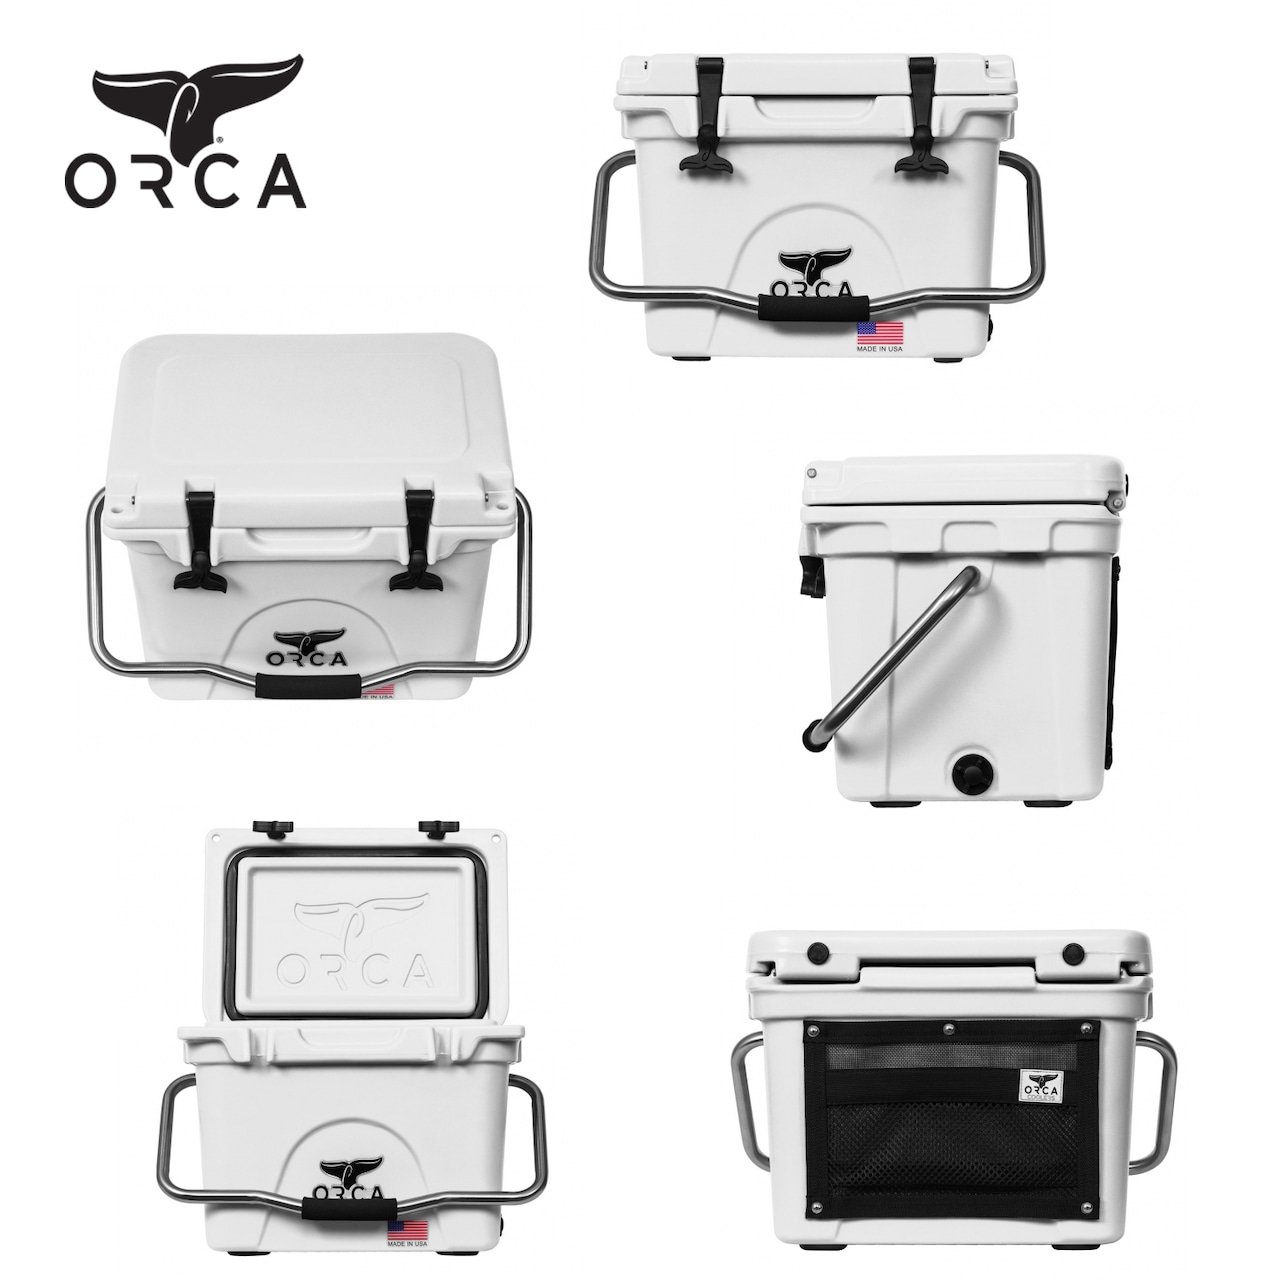 ORCA Coolers 20 Quart オルカ クーラー ボックス キャンプ用品 アウトドア キャンプ グッズ 保冷 クッキング ドリンク オルカクーラーズジャパン